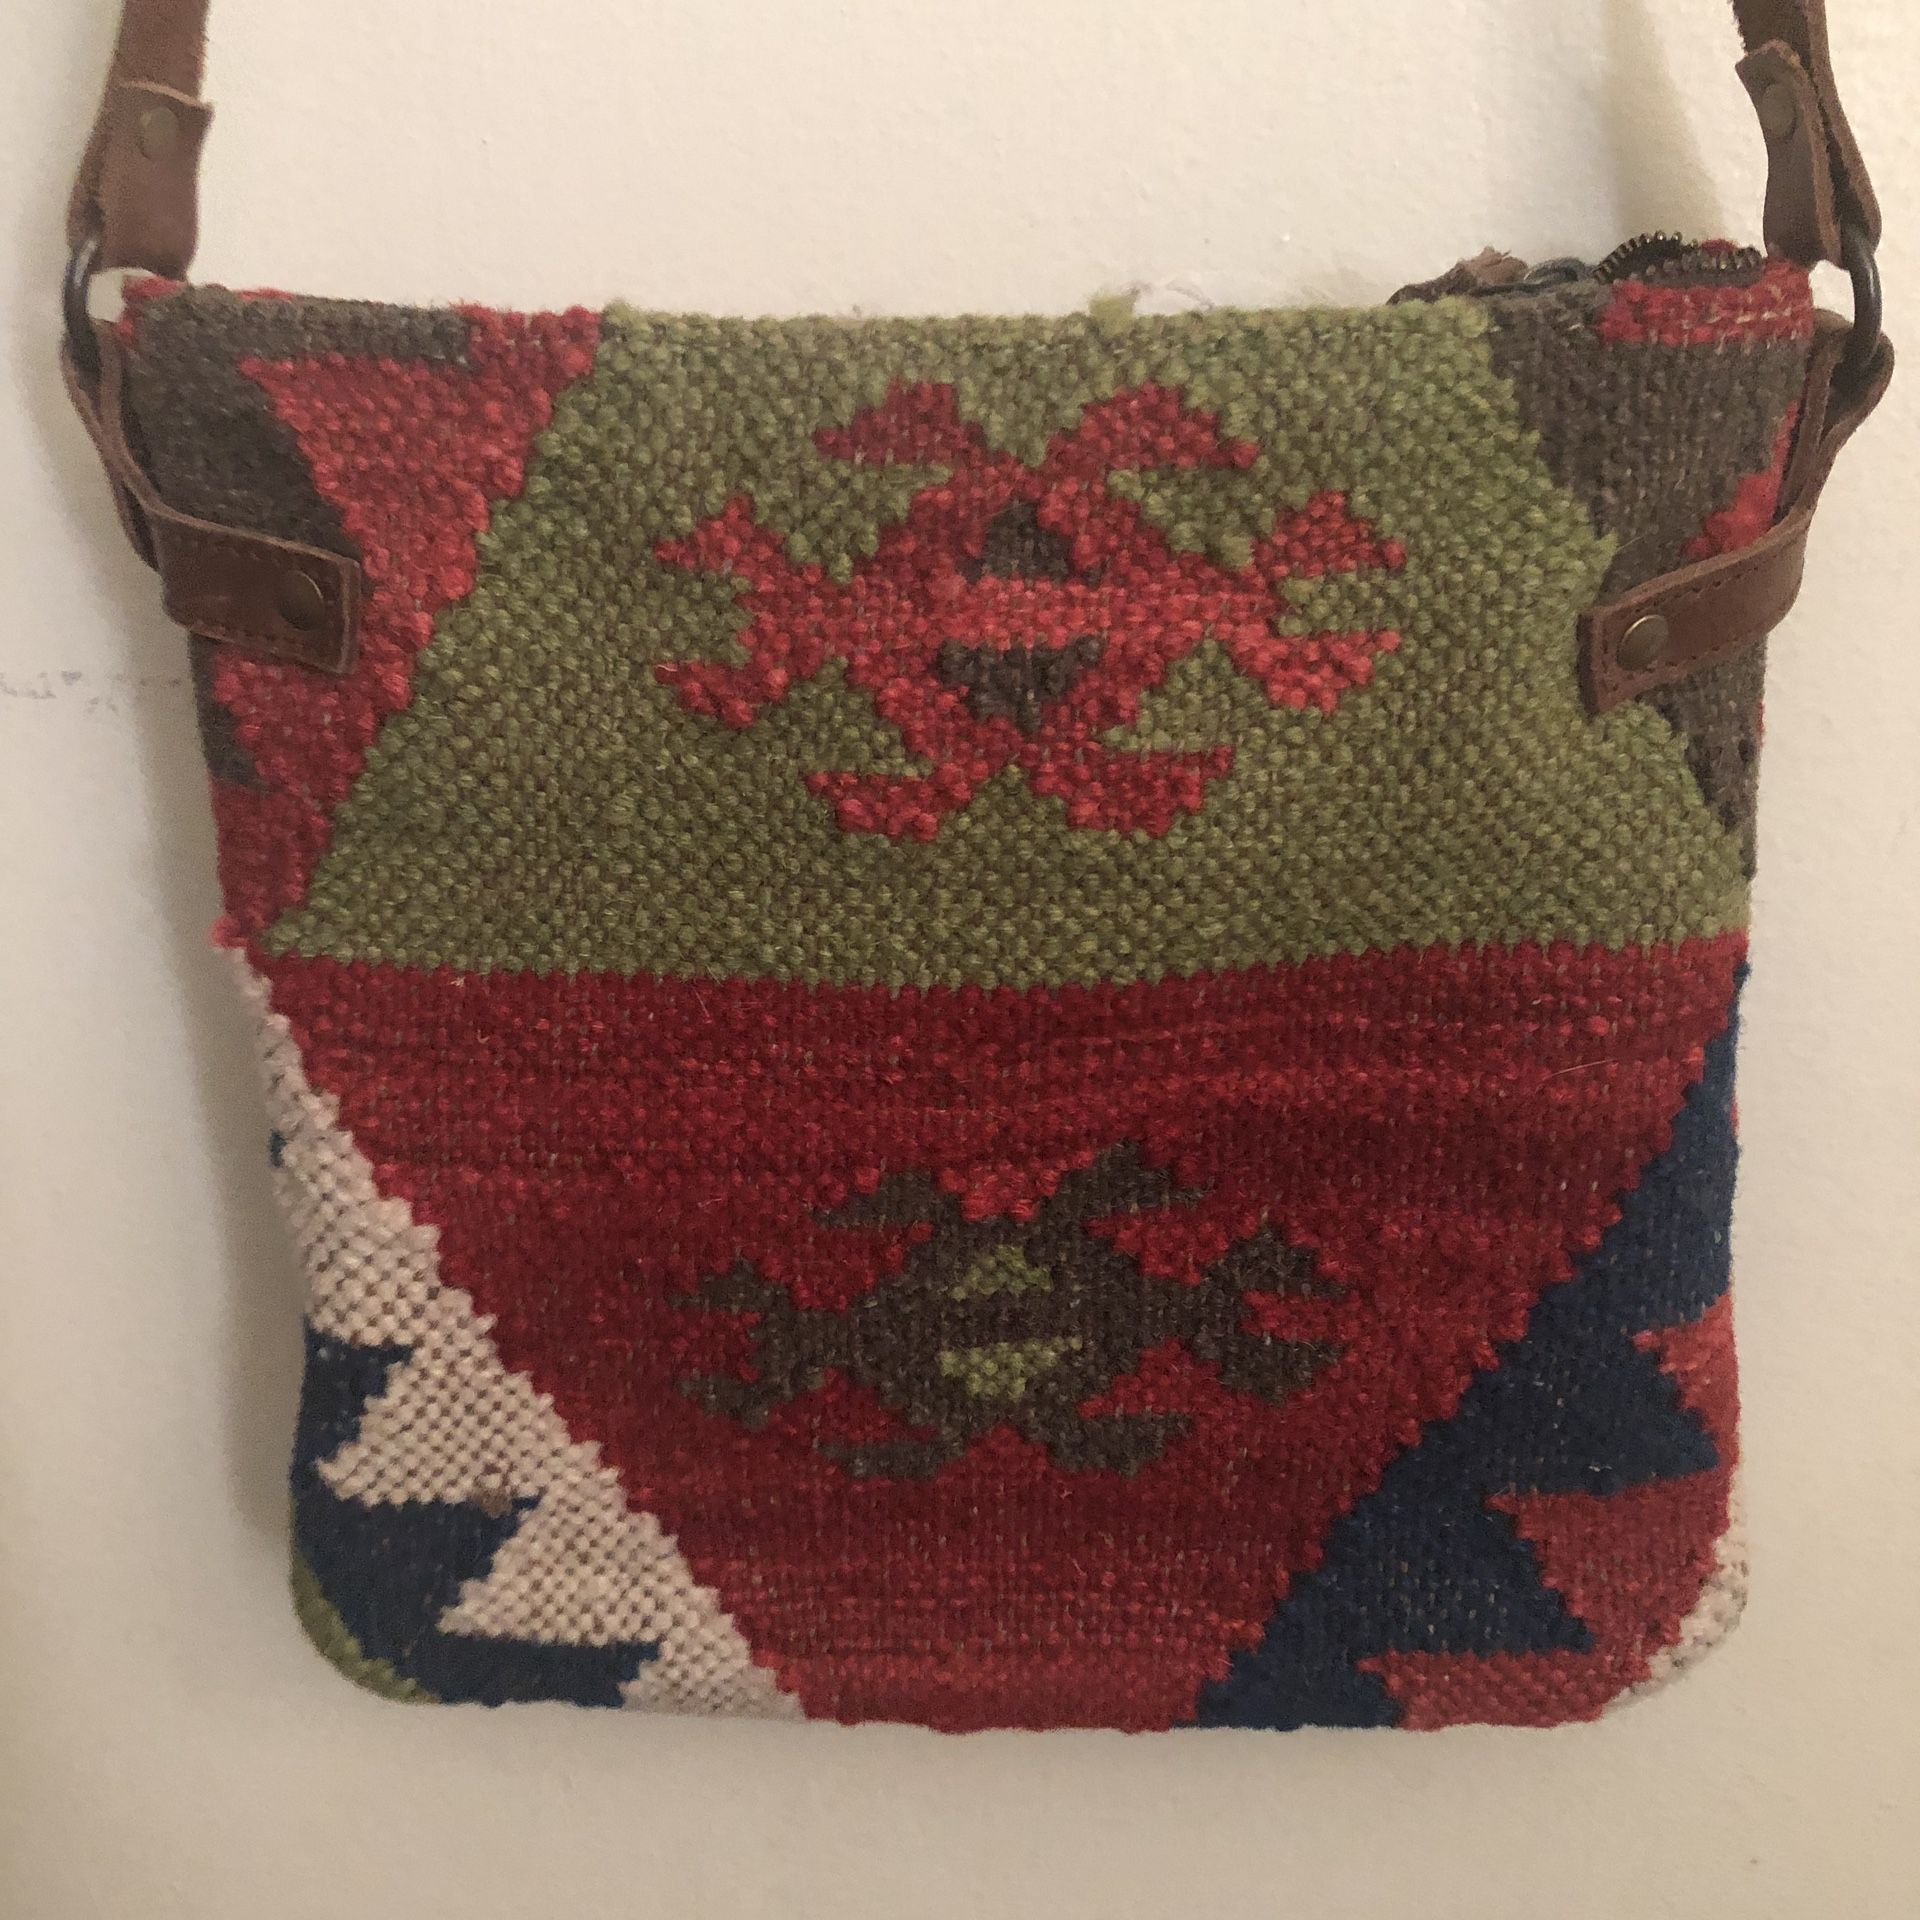 Purse Handbag Tapestry Kilm Vtg Leather estate find